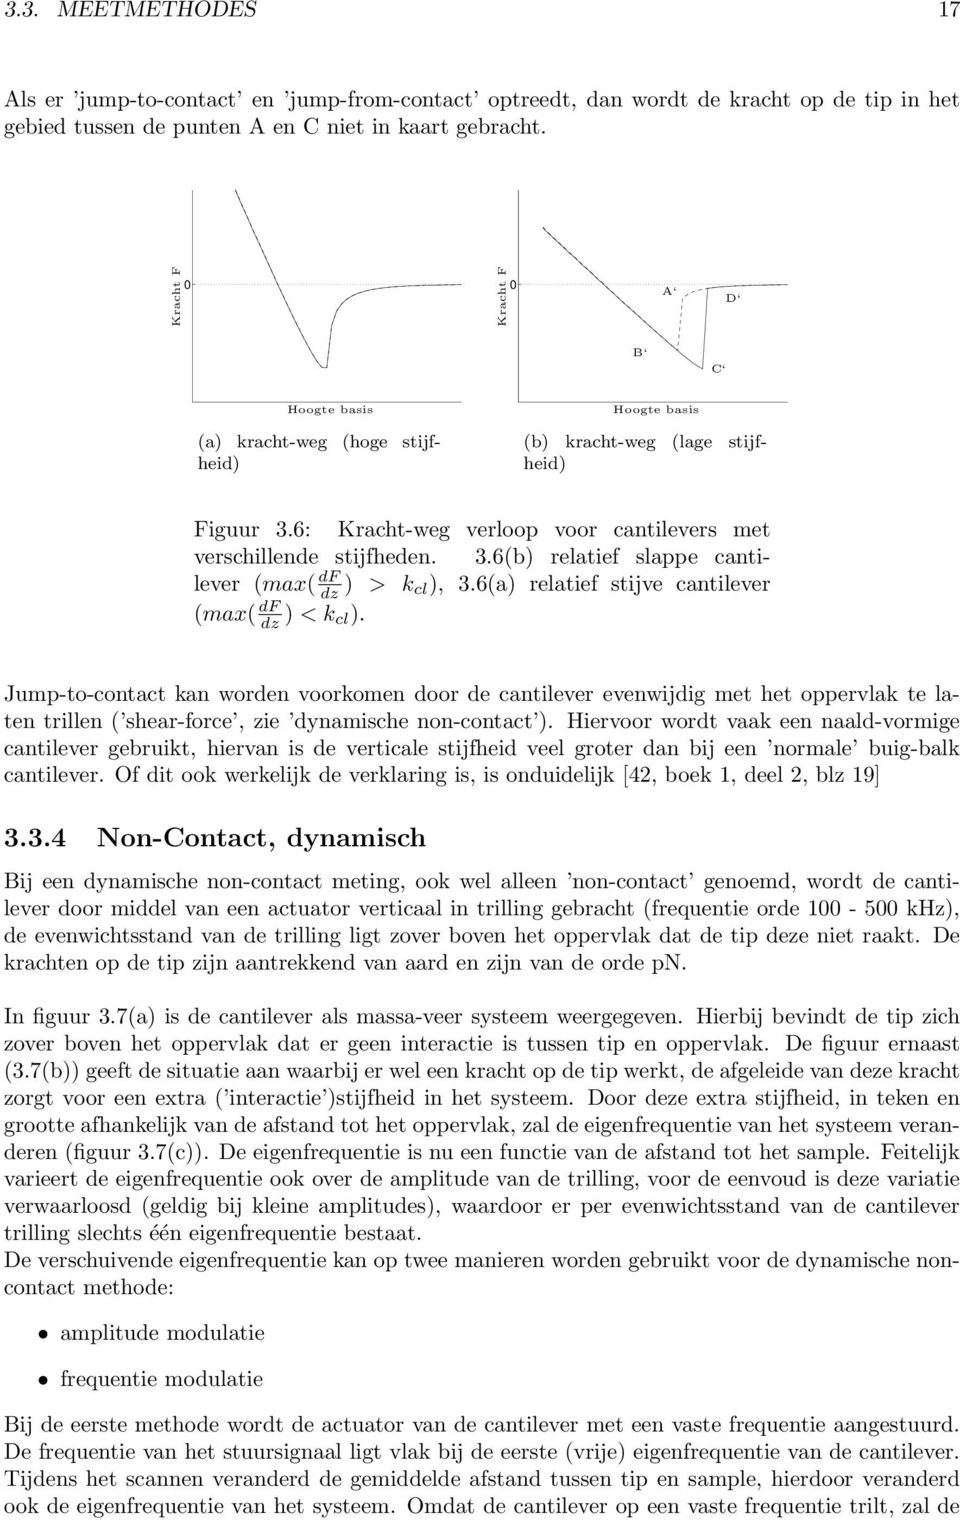 6: Kracht-weg verloop voor cantilevers met verschillende stijfheden. 3.6(b) relatief slappe cantilever (max( df dz ) > k cl), 3.6(a) relatief stijve cantilever (max( df dz ) < k cl).